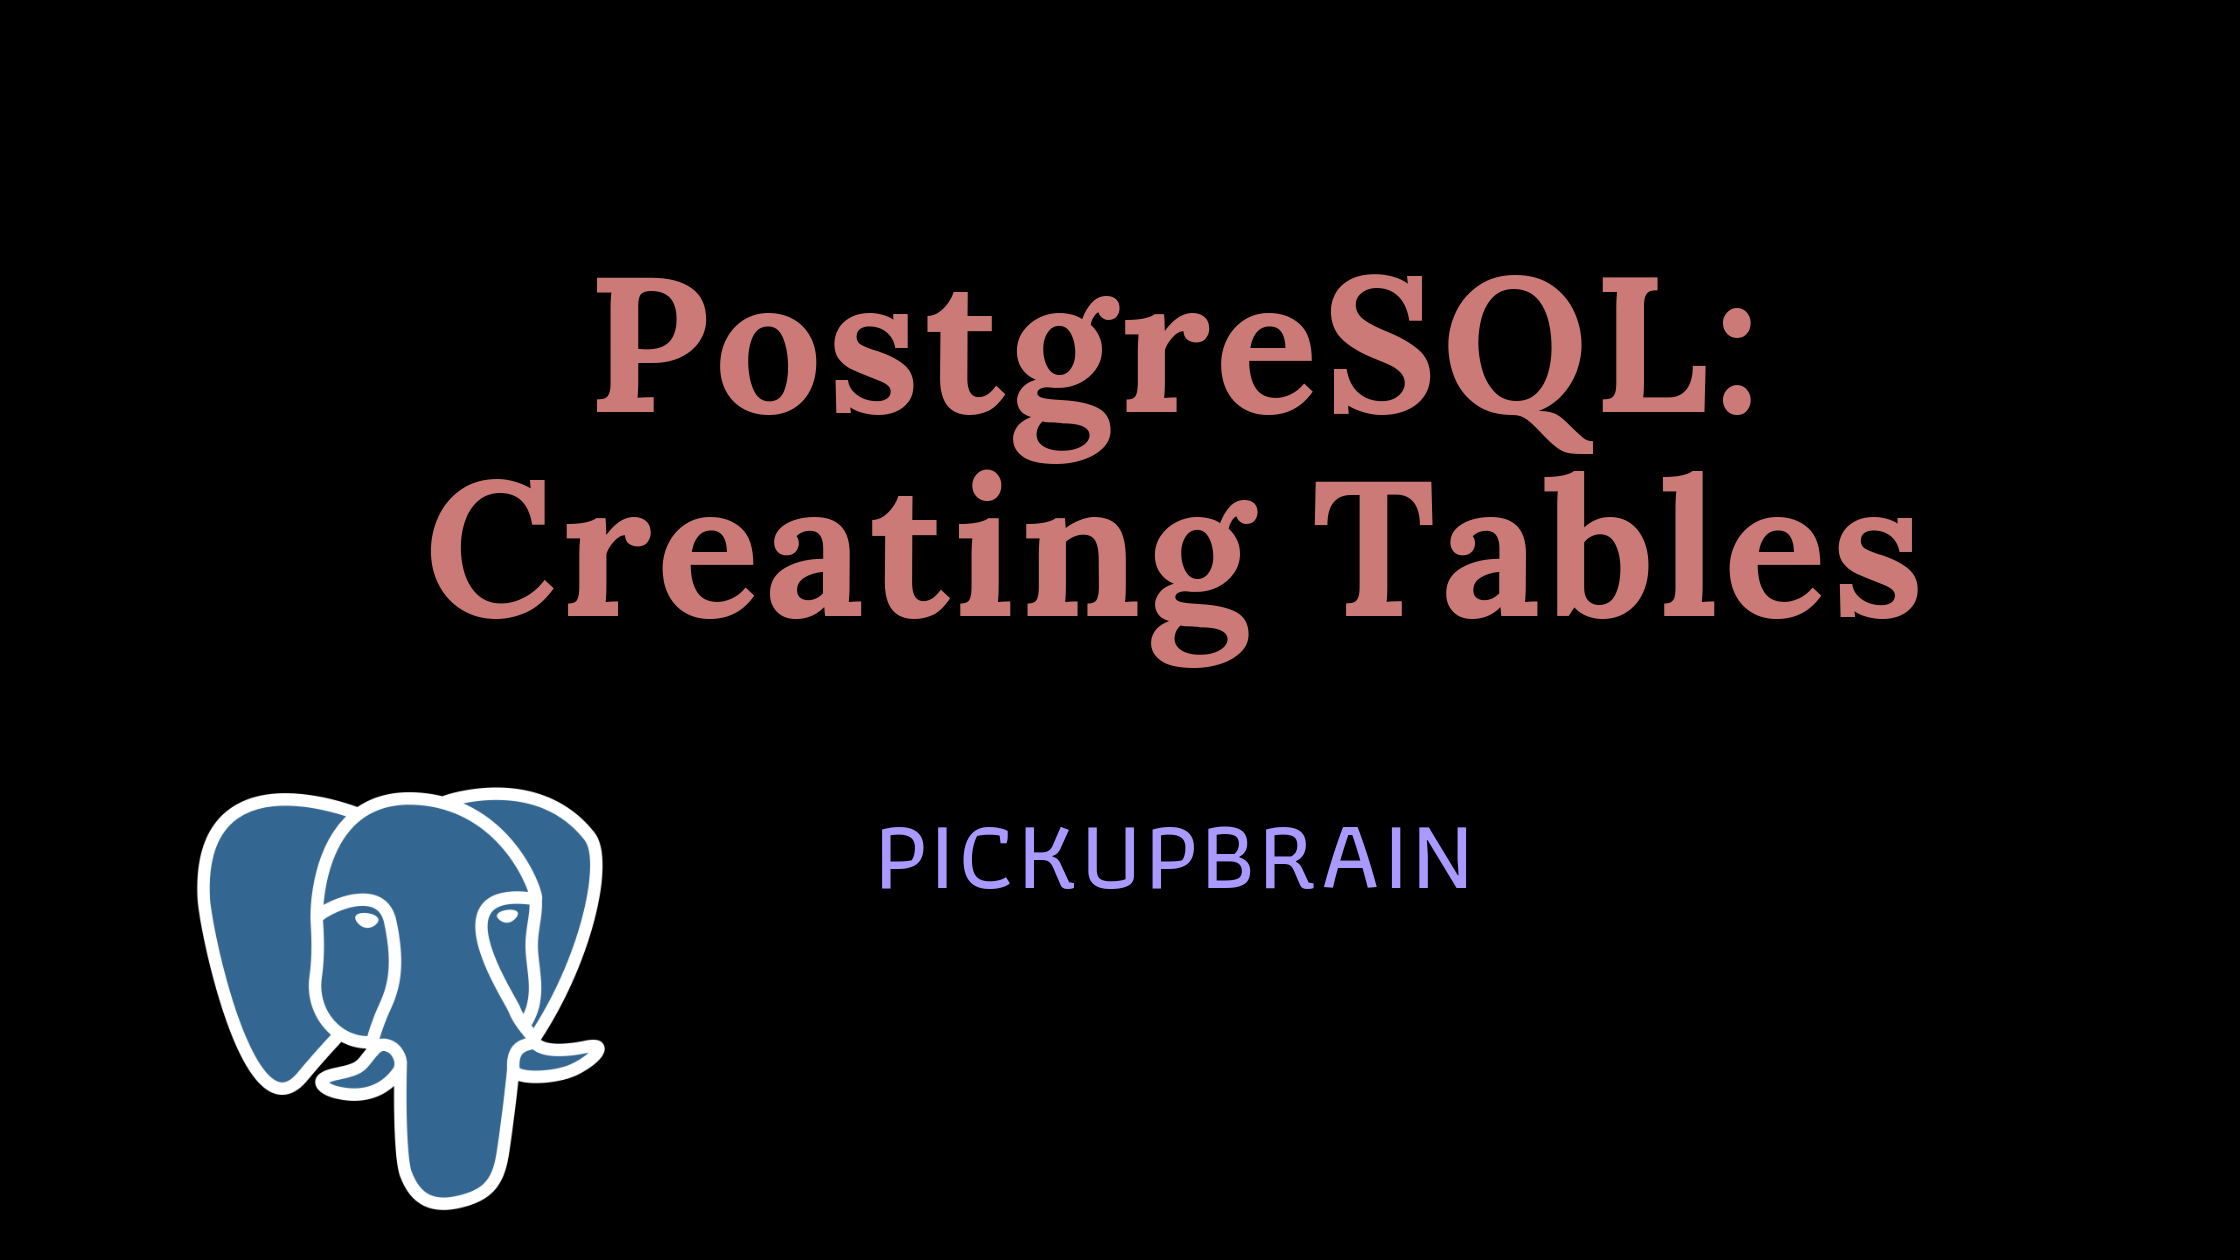 Creating table in postgresql